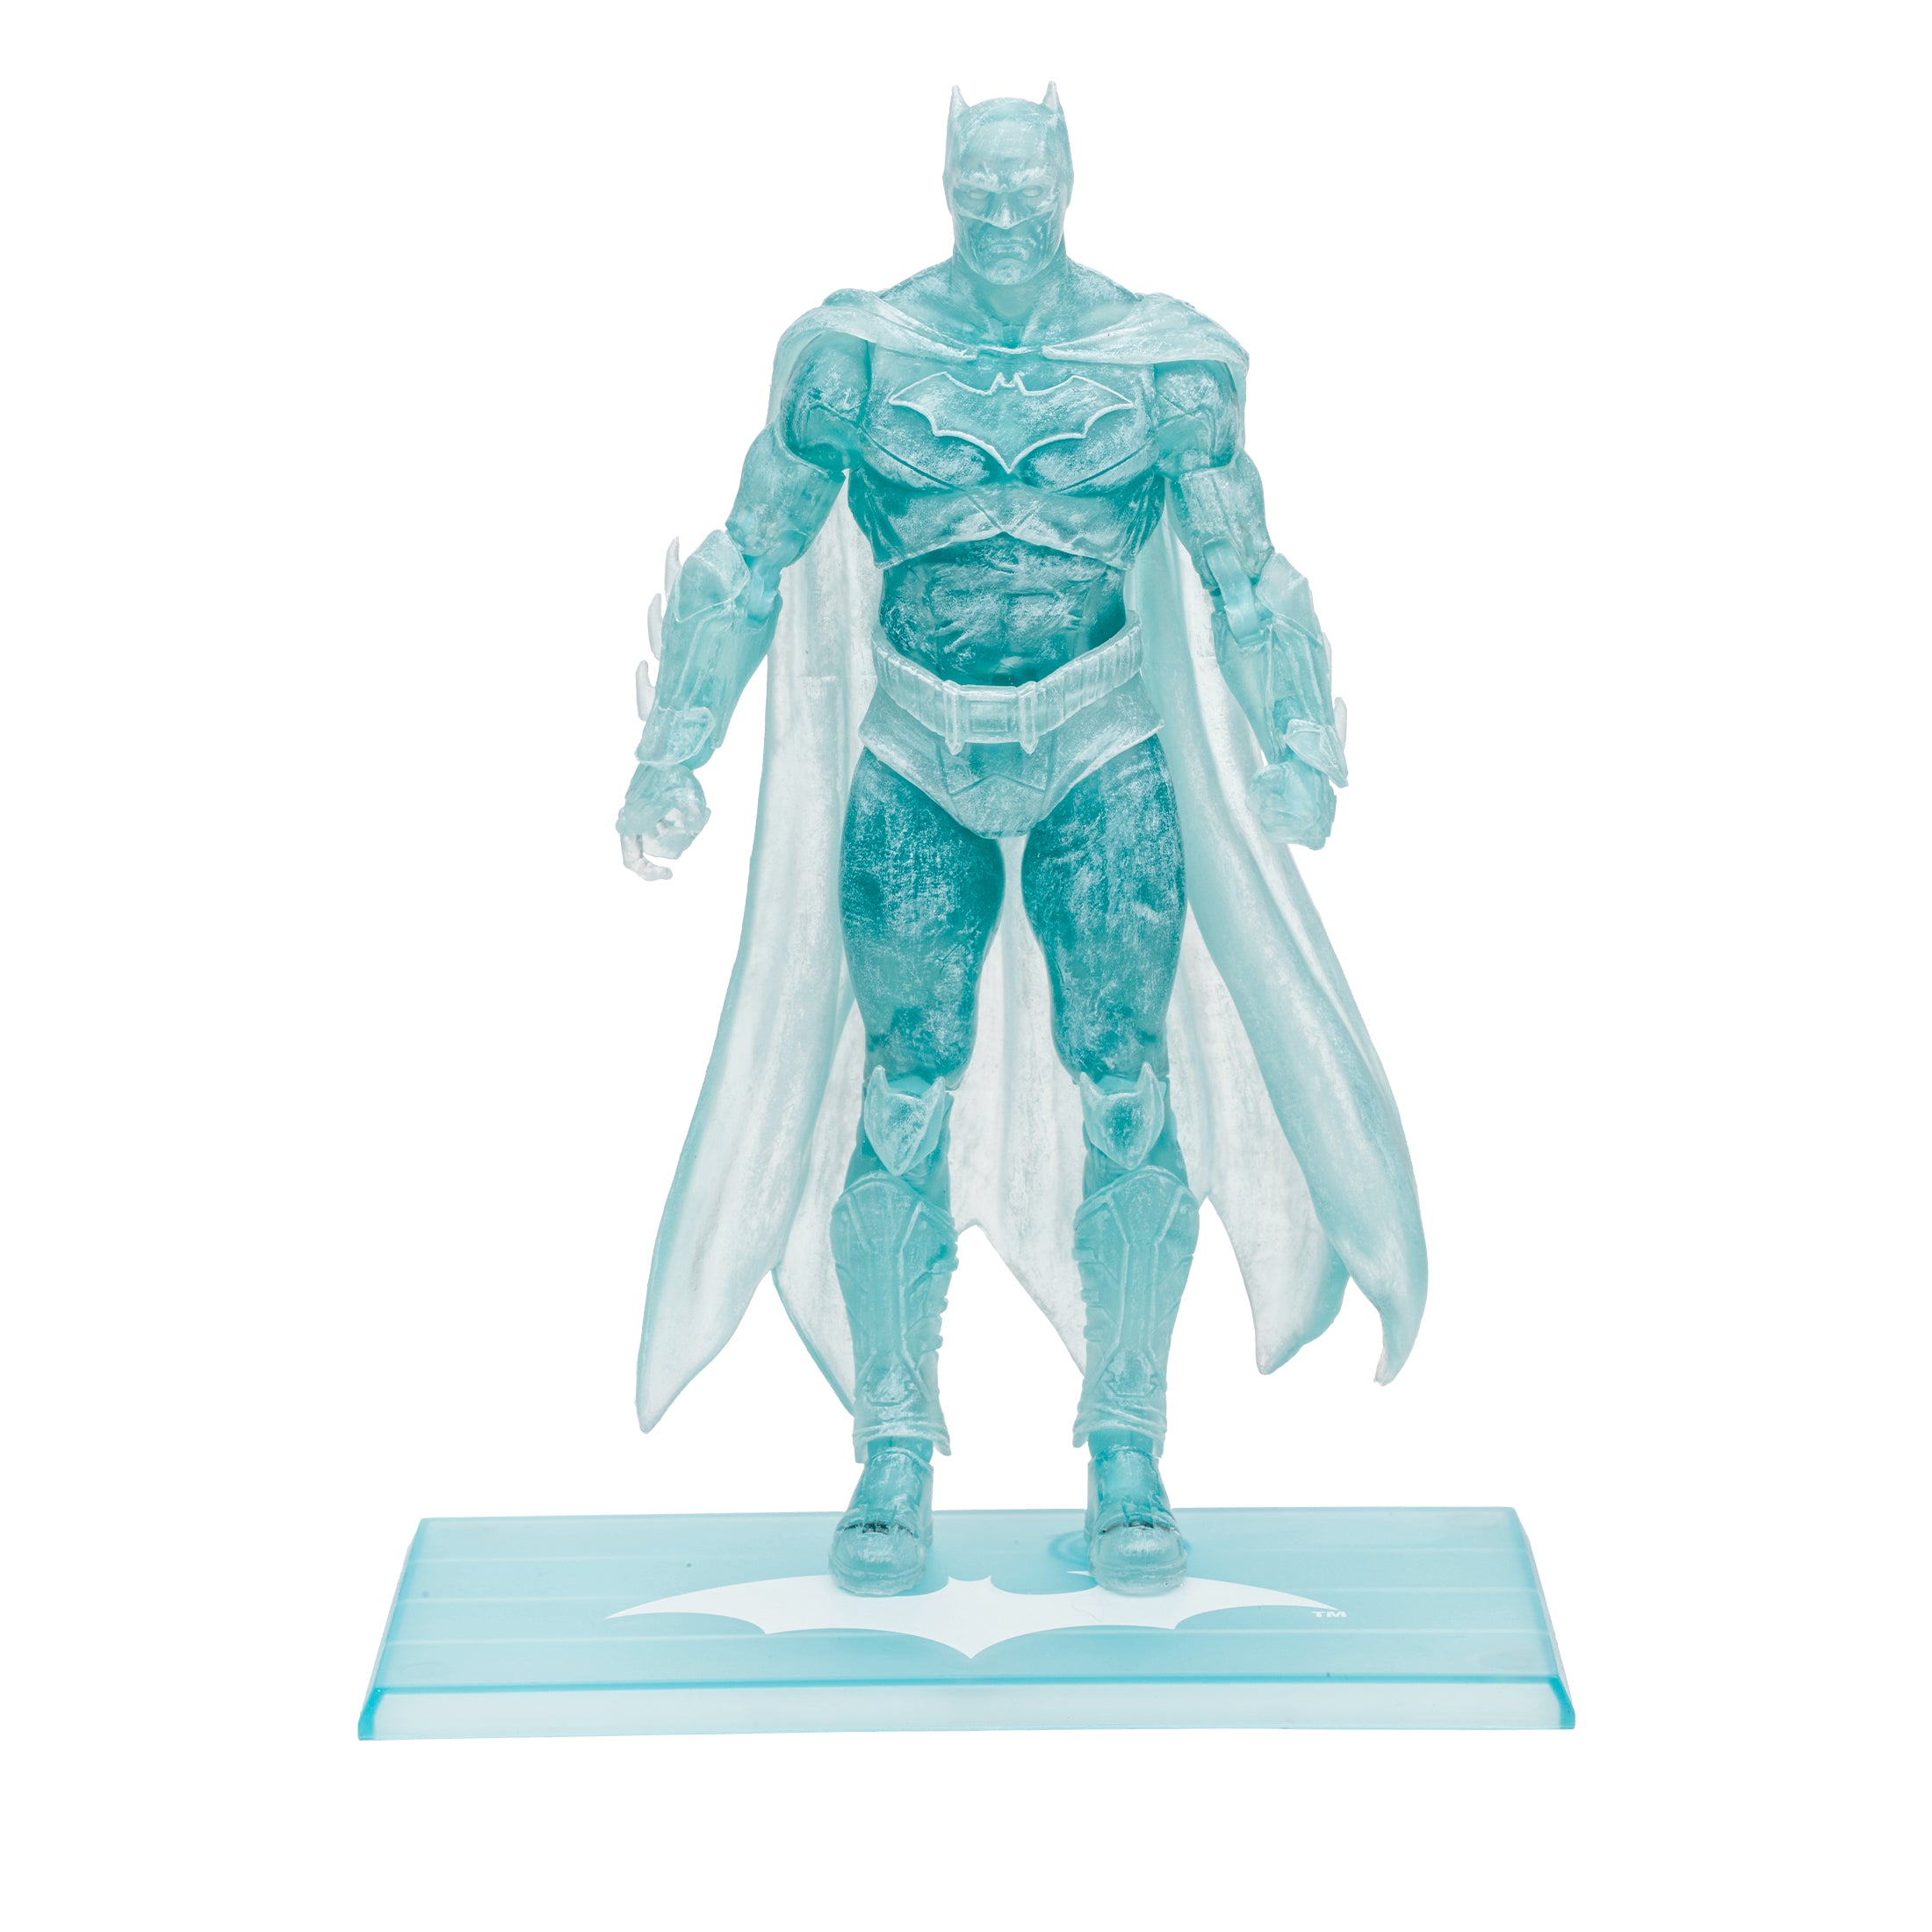 McFarlane Figura de Accion Frostbite Edition: DC Comics Rebirth - Batman Gold Label 7 Pulgadas